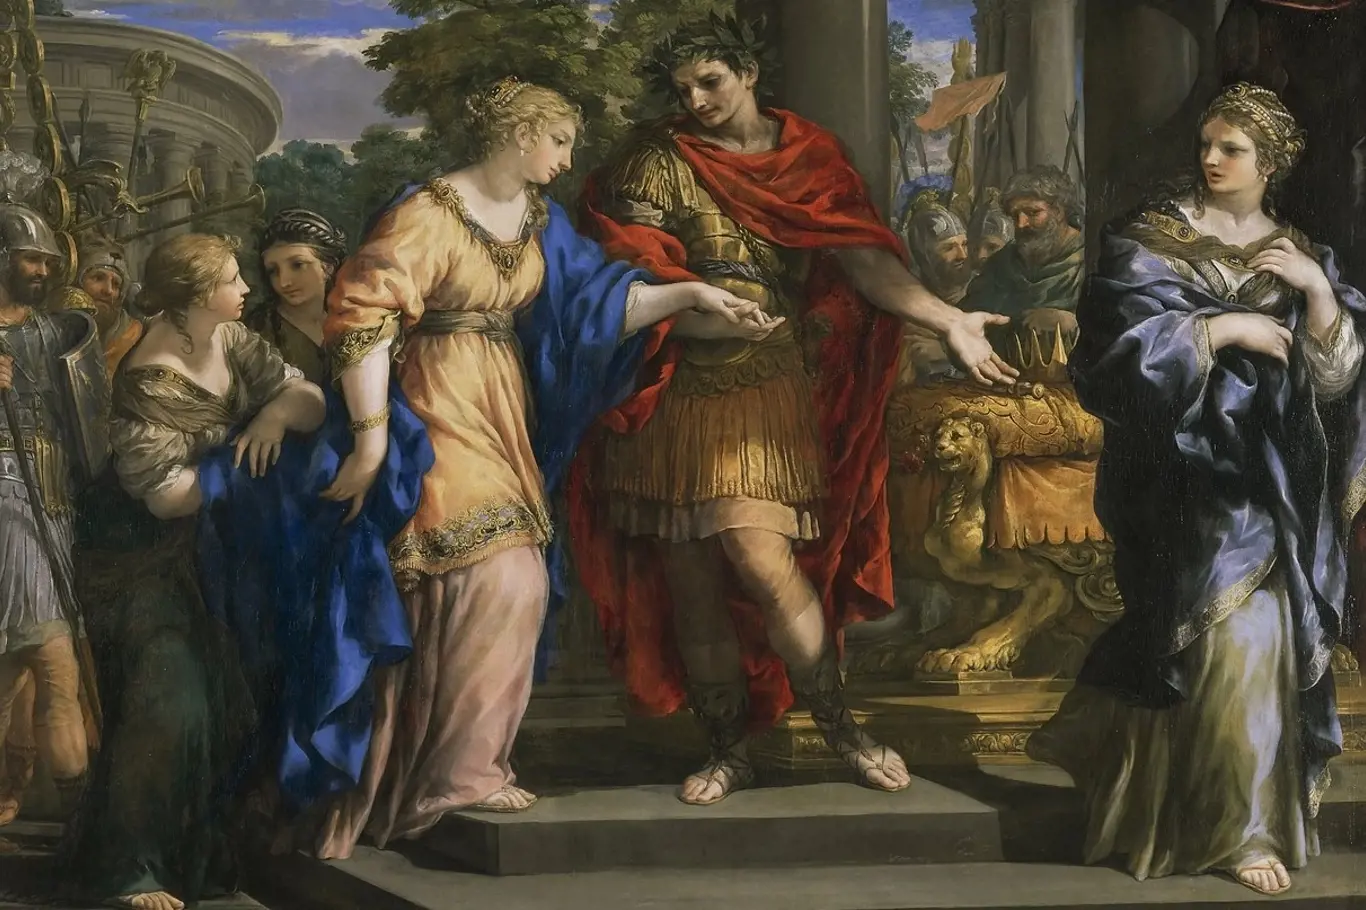 Caesar navrací moc Kleopatře. Její sestra Arsinoé (vpravo) závistivě přihlíží.